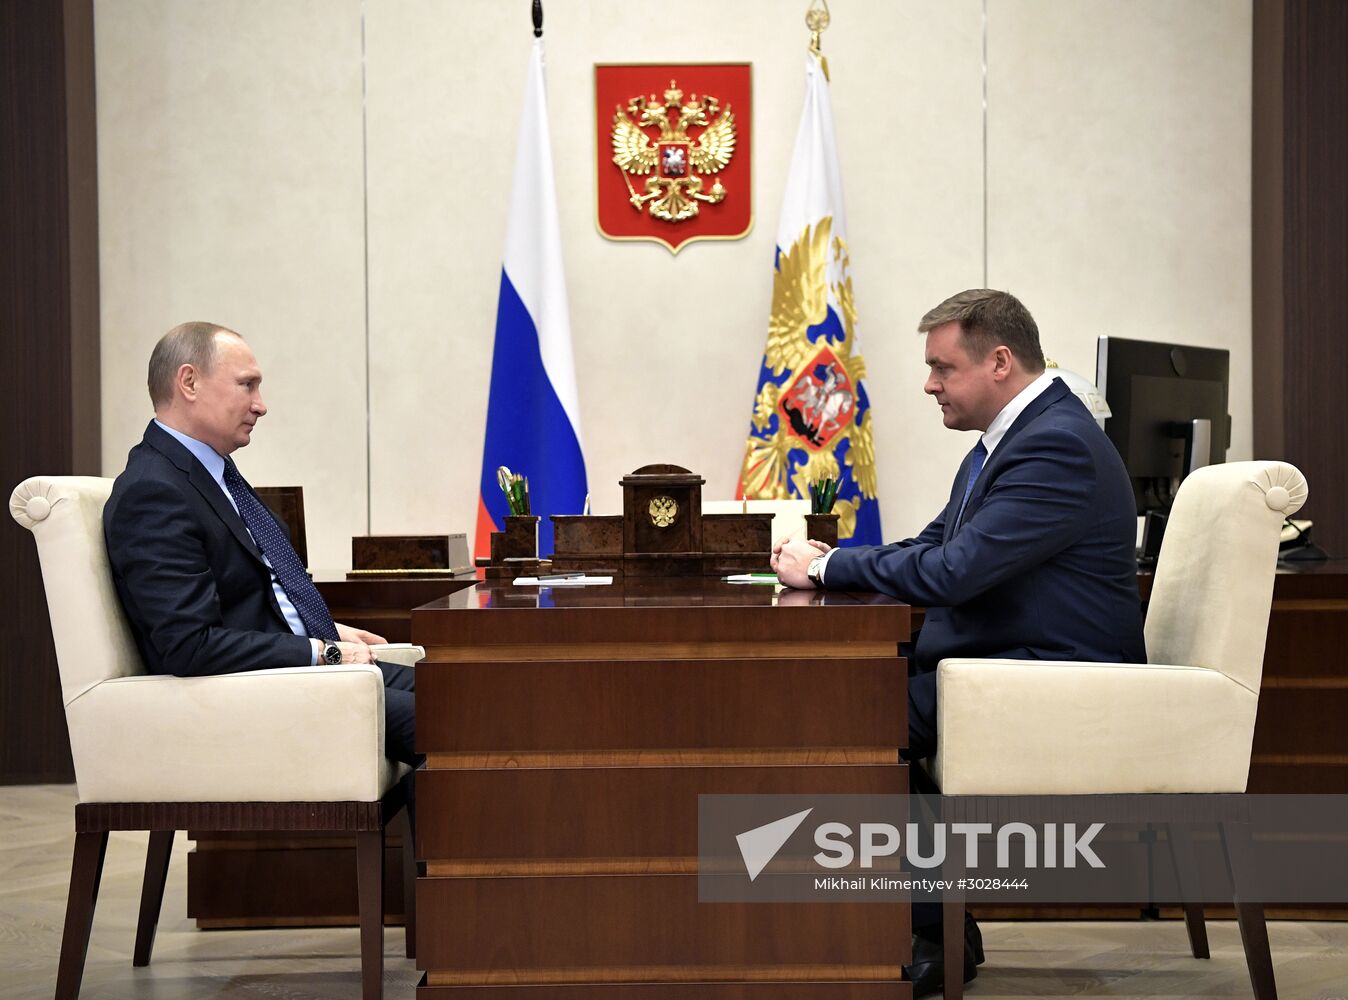 Vladimir Putin meets with Nikolai Lyubimov